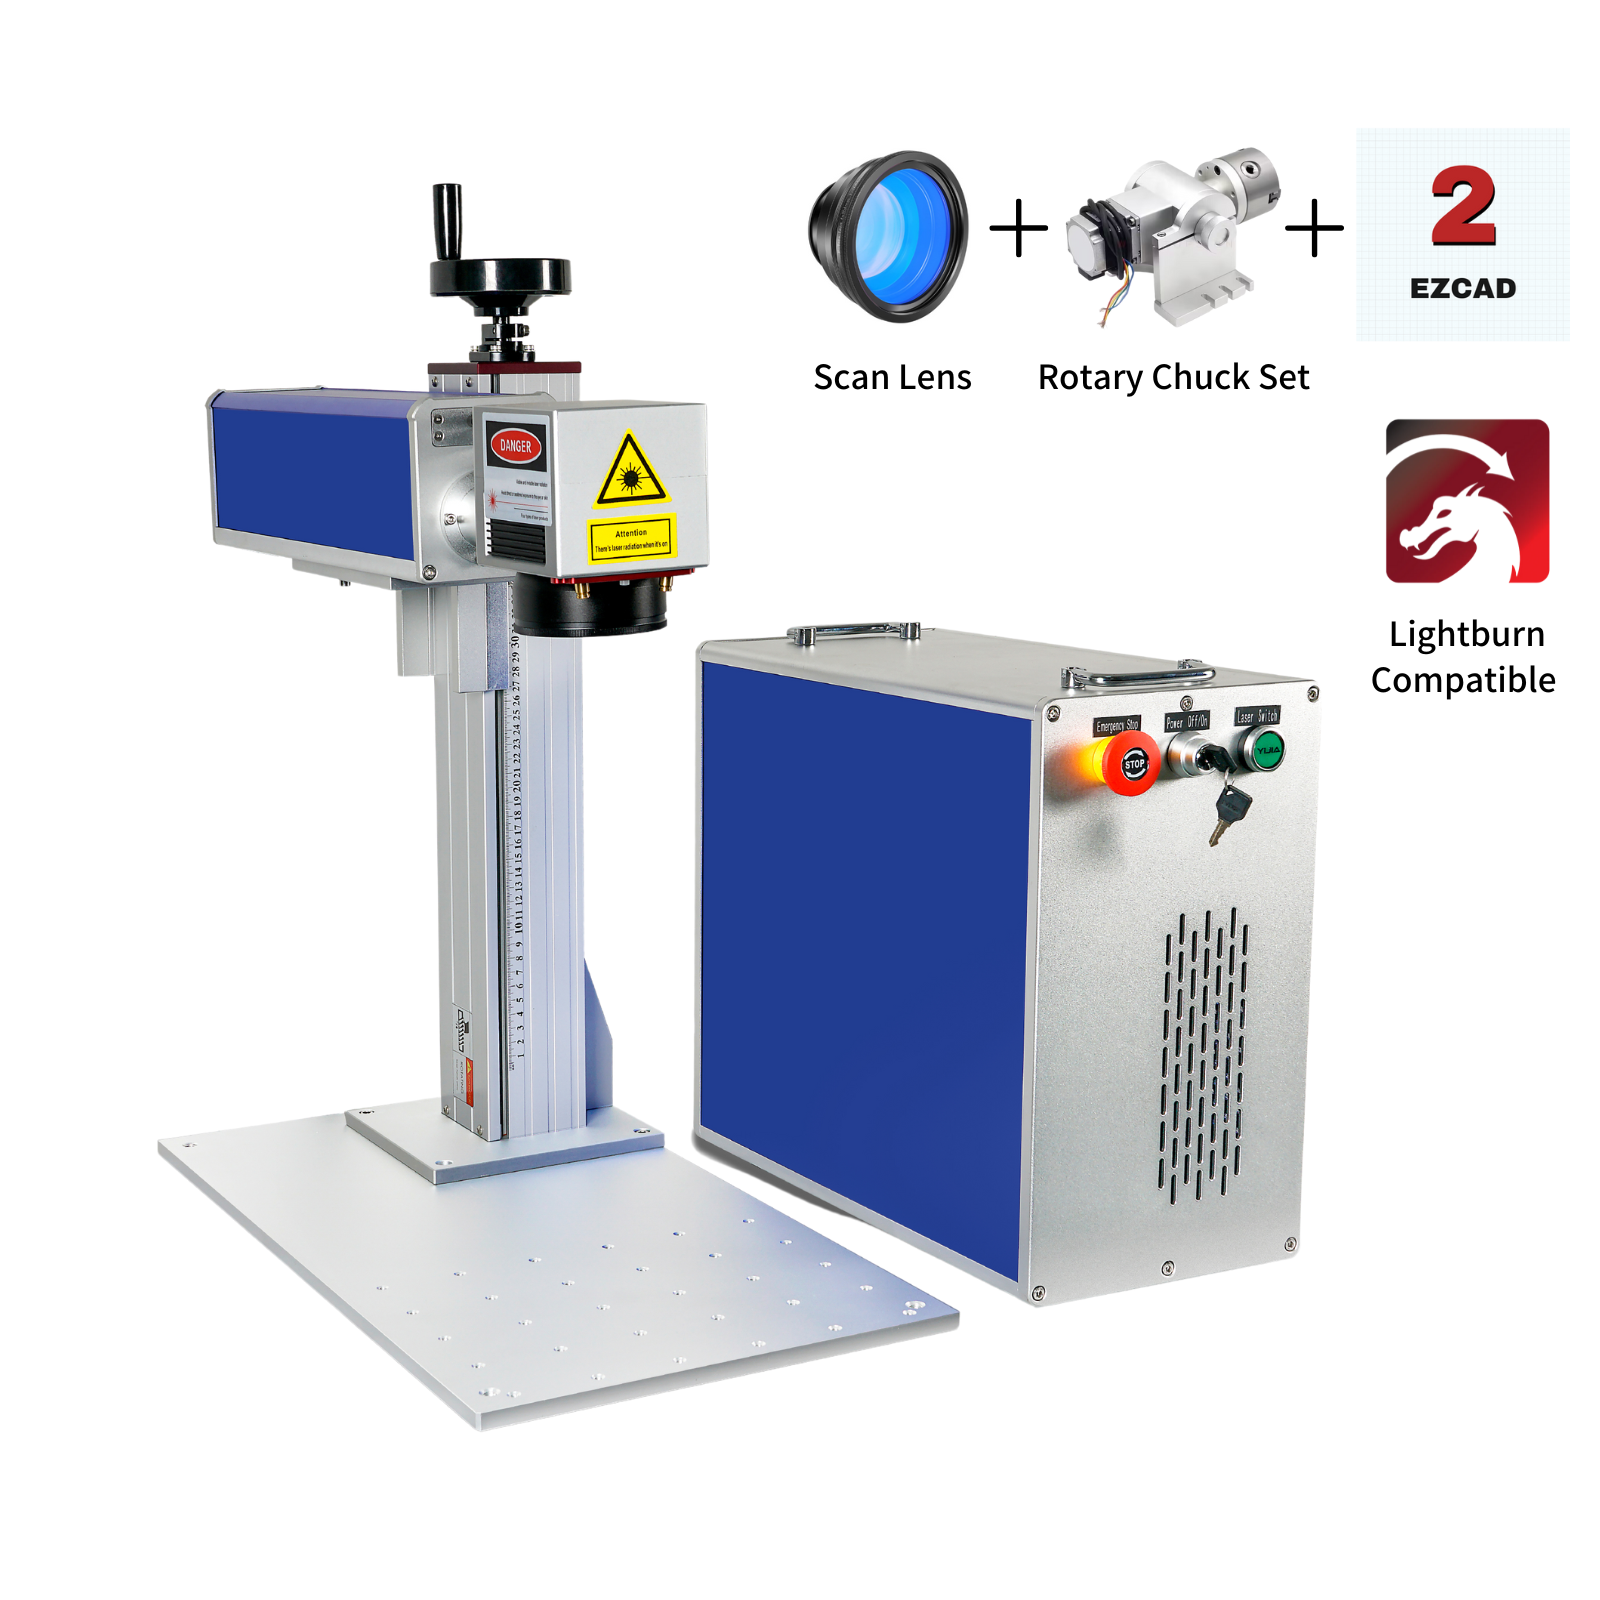 Laser Engraving Machine for Permanent Metal Engraving or Marking